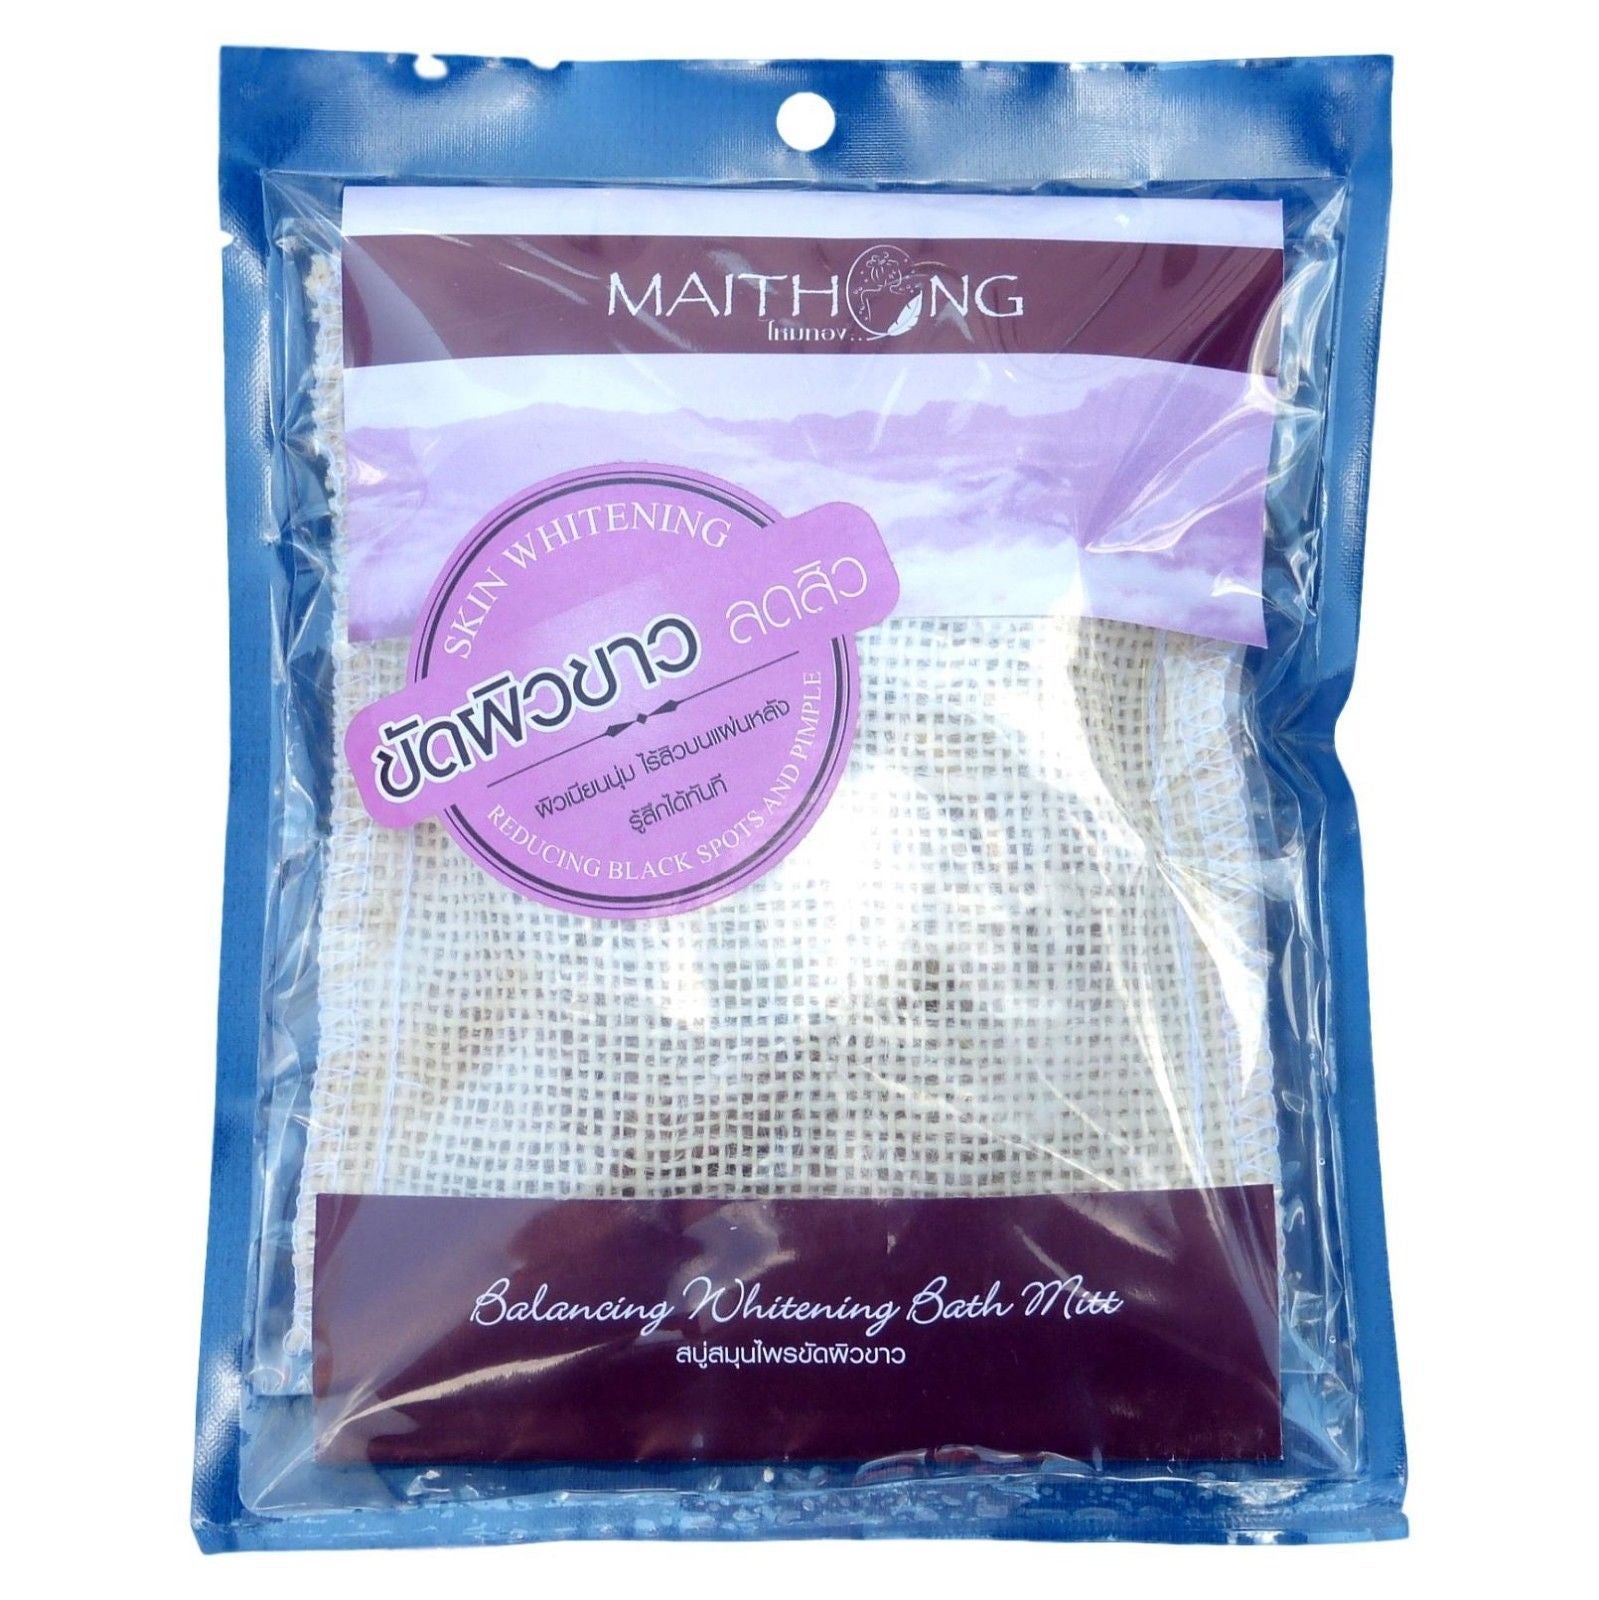 Maithong Herbal Skin Whitening Bath Mitt 100g - Asian Beauty Supply